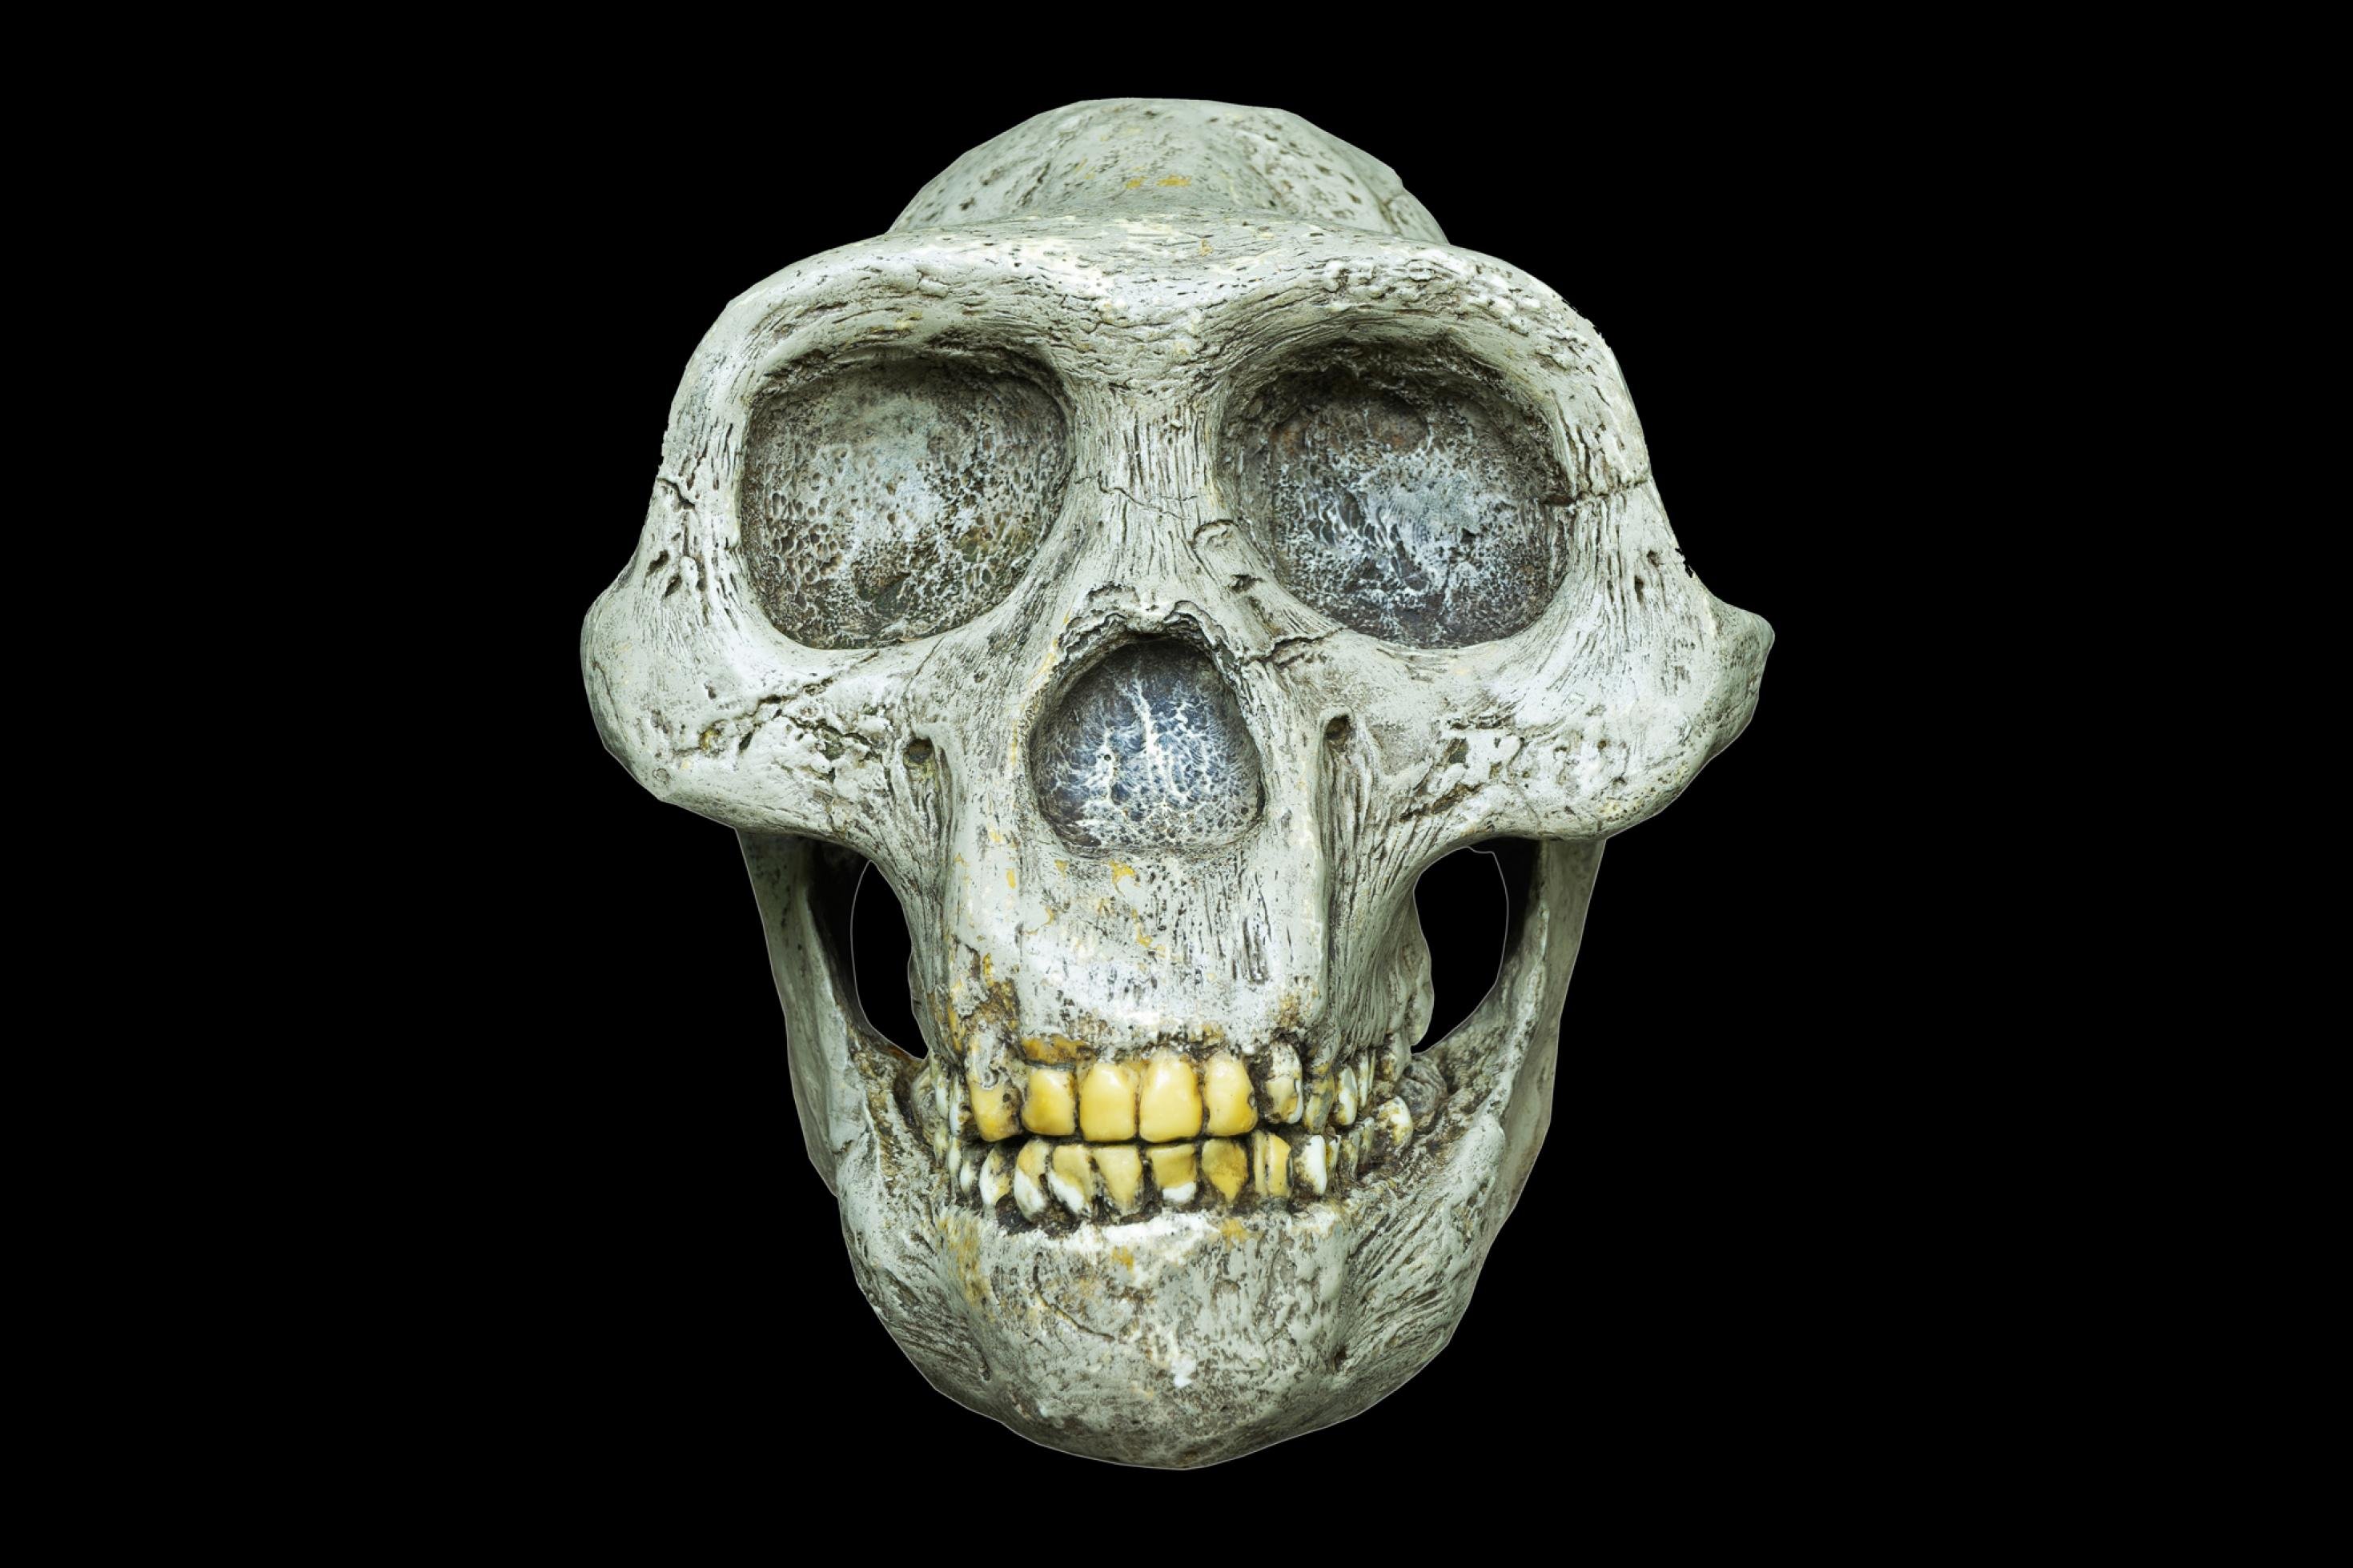 Vor schwarzem Hintergrund ist ein heller, weißlicher Gesichtsschädel zu erkennen, der den Leser frontal anschaut. Statt einer Stirn, wie beim Menschen, findet sich hier ein mächtiger Knochenwulst quer über den Augen, hinter dem der nur kleine Hirnschädel ein wenig aufragt. Auch die Wangenknochen dieser Kreatur, die wissenschaftlich Australopithecus africanus genannt wird, sind stark ausgeprägt, ebenso die Kiefer.